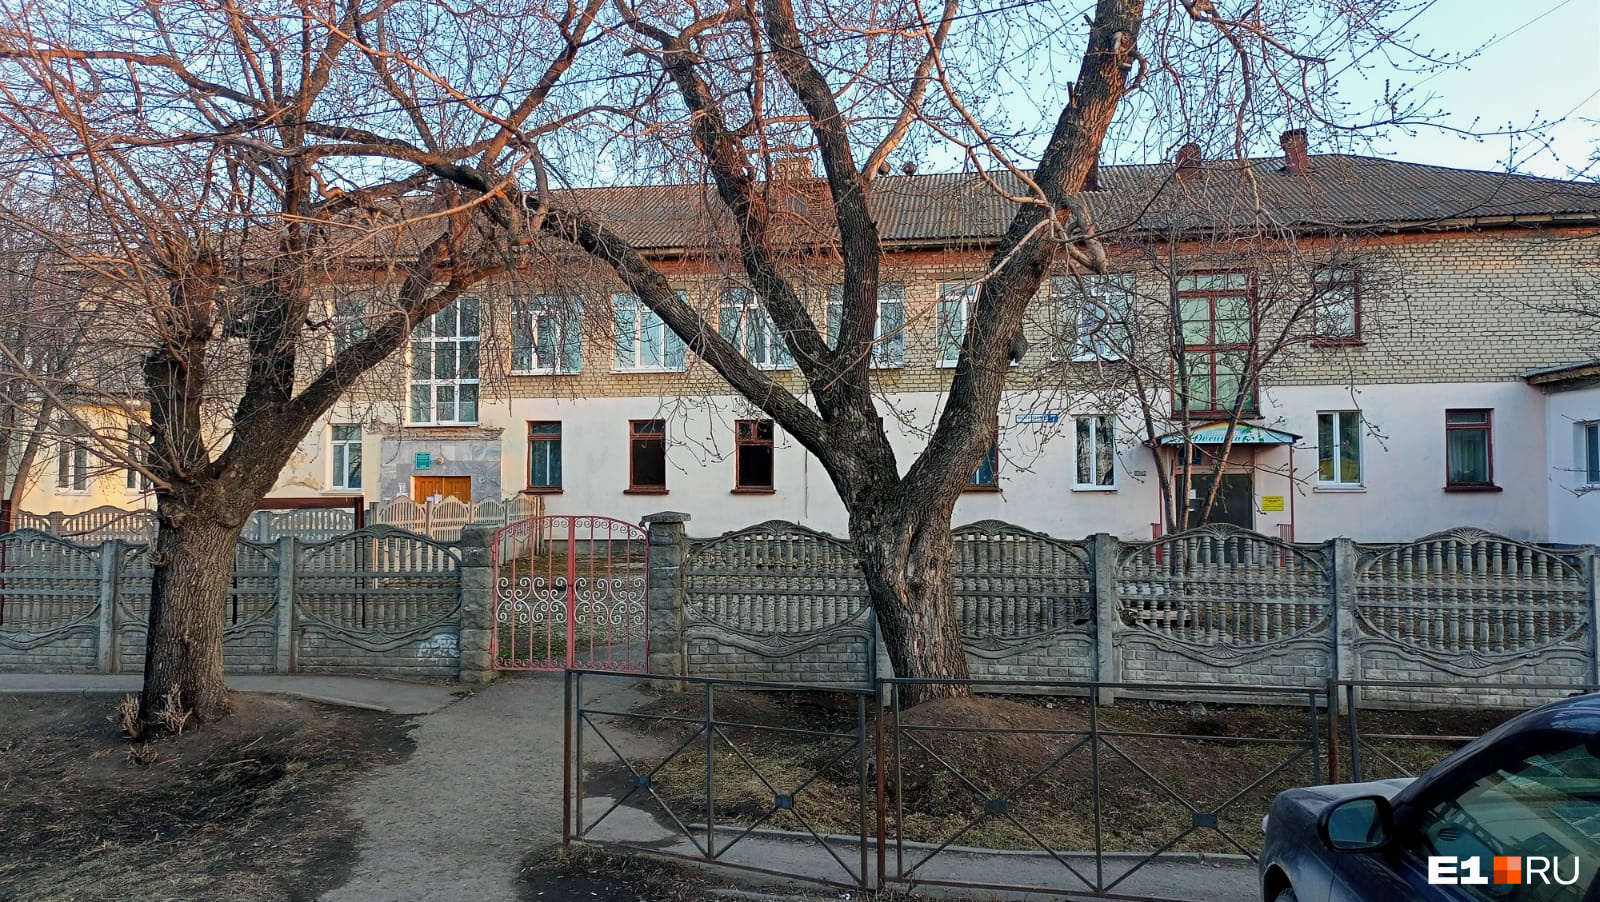 «Не было никакого уведомления». В уральском поселке внезапно закрыли детский сад из-за ремонта поликлиники